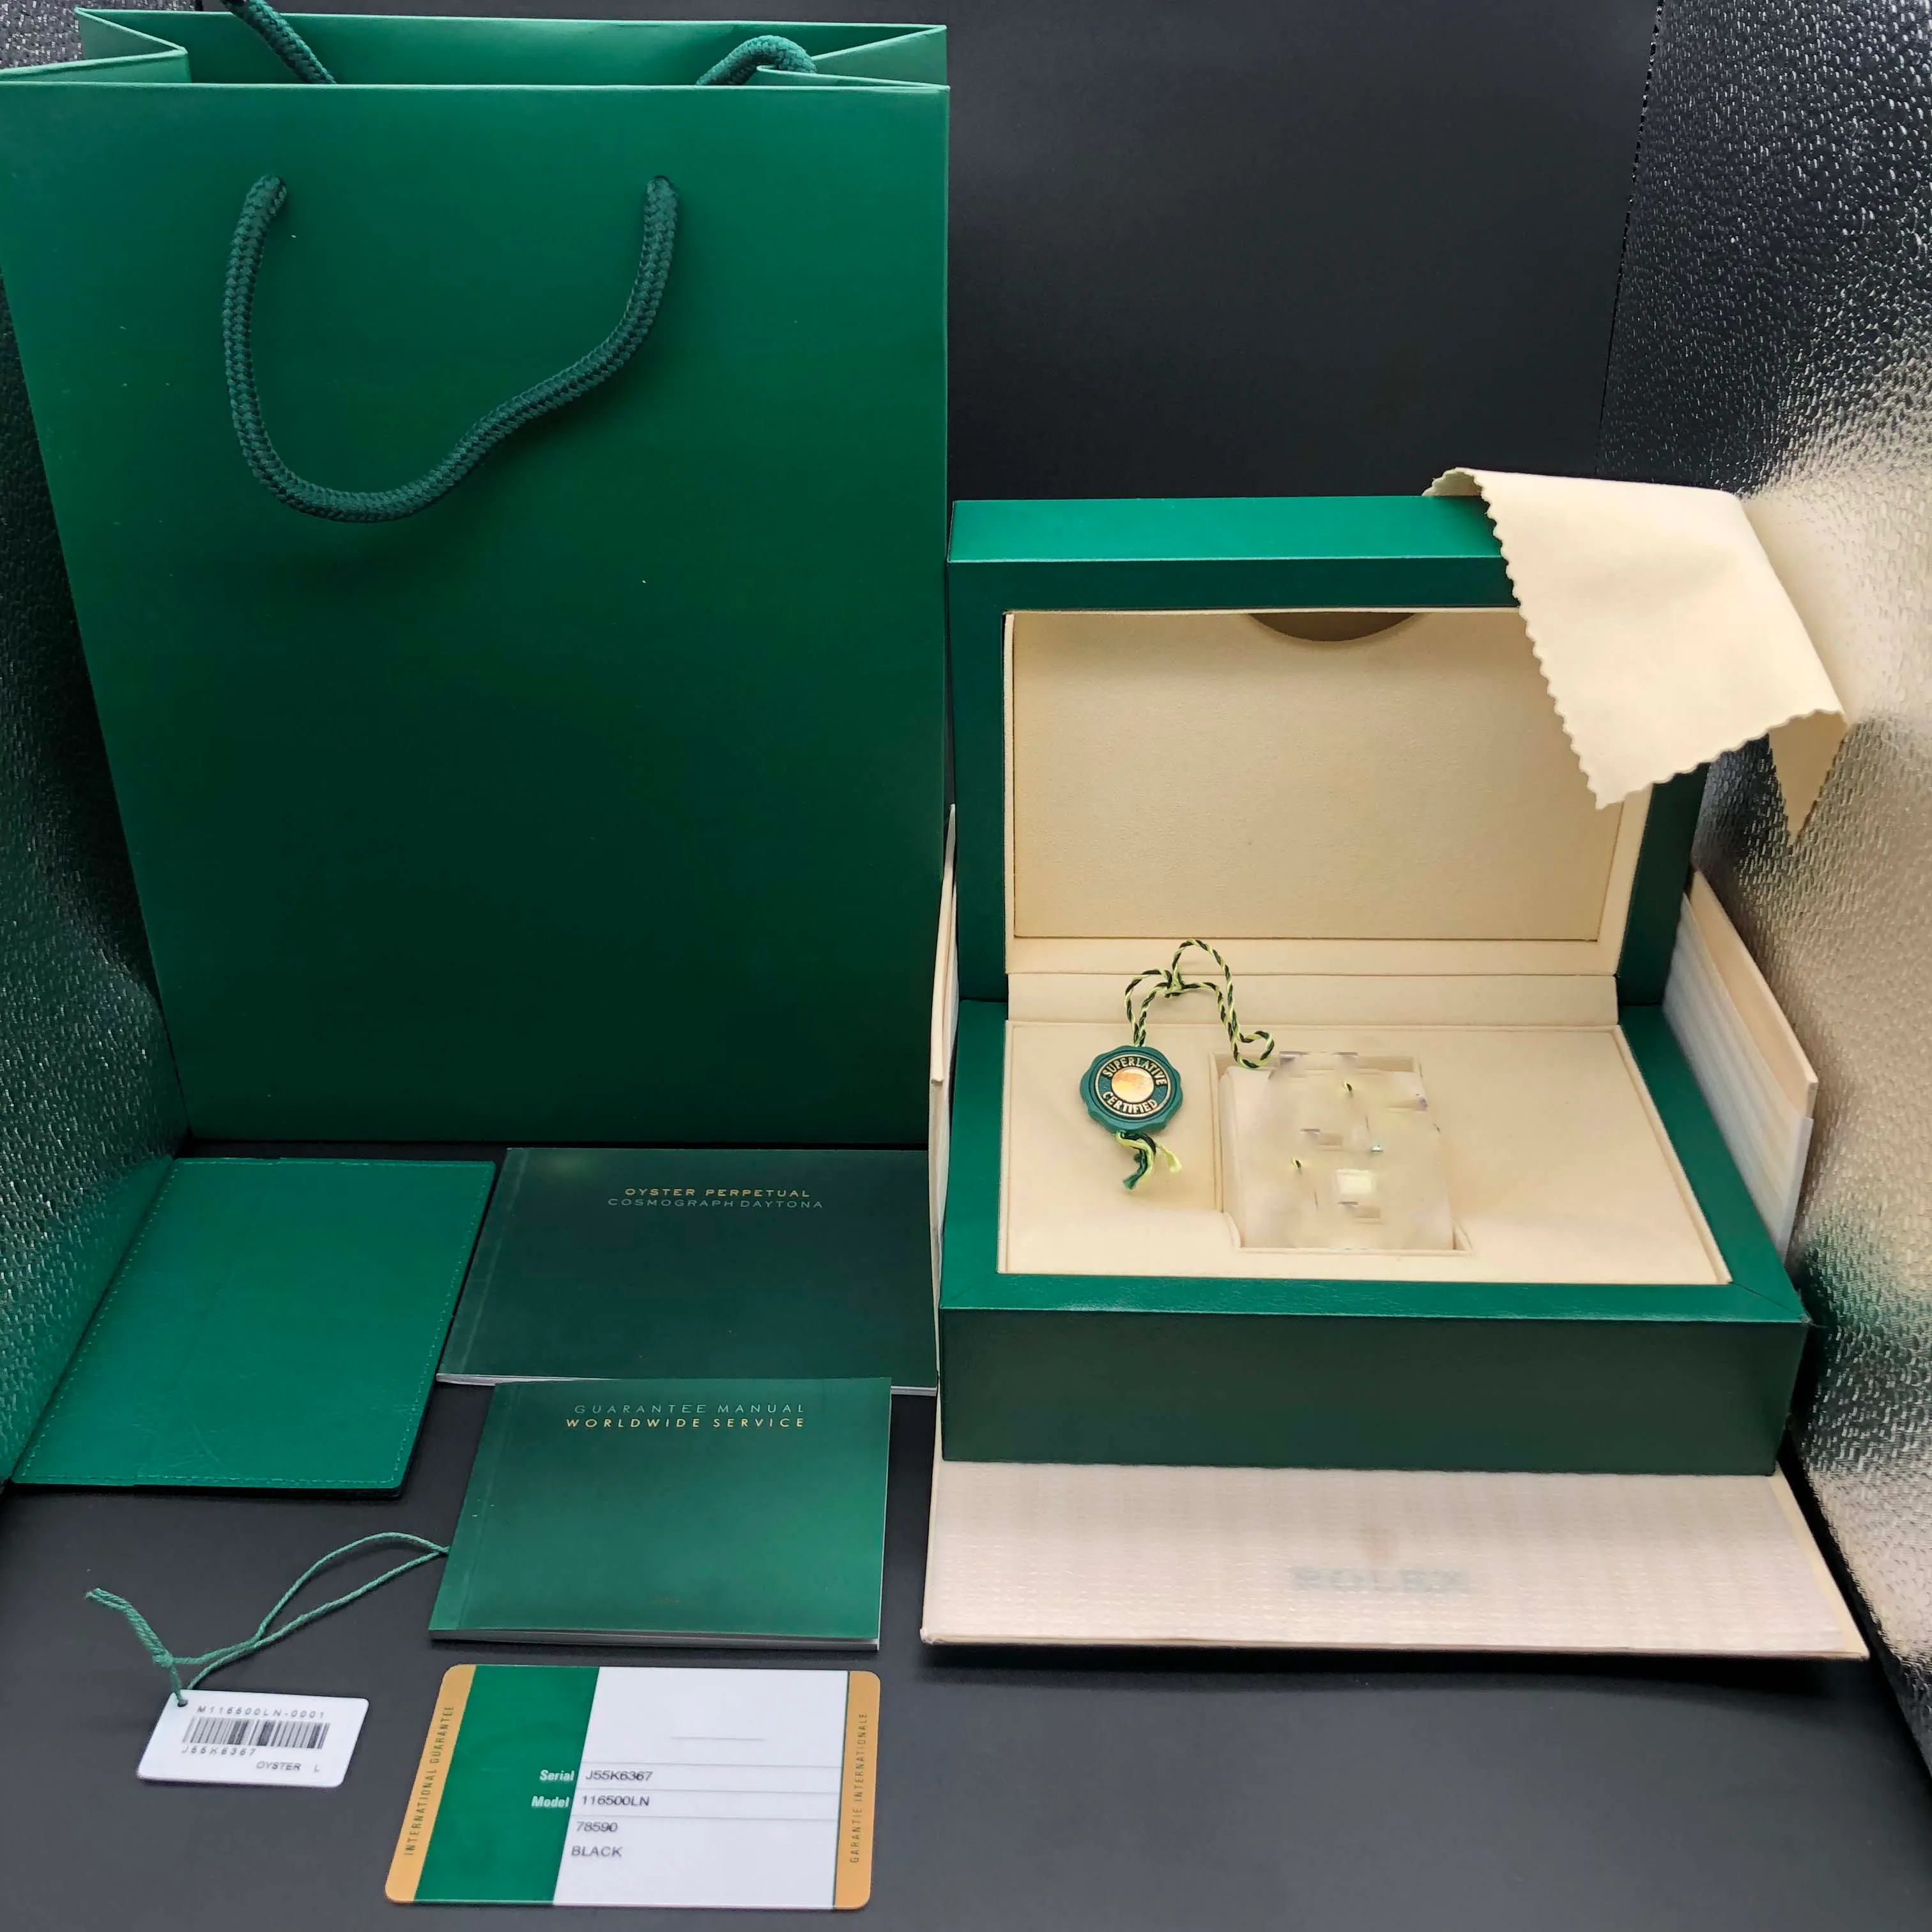 Papeles a juego correctos originales, tarjeta de seguridad, bolsa de regalo, caja de reloj de madera verde superior para cajas Rolex, folletos, relojes, impresión de tarjeta personalizada